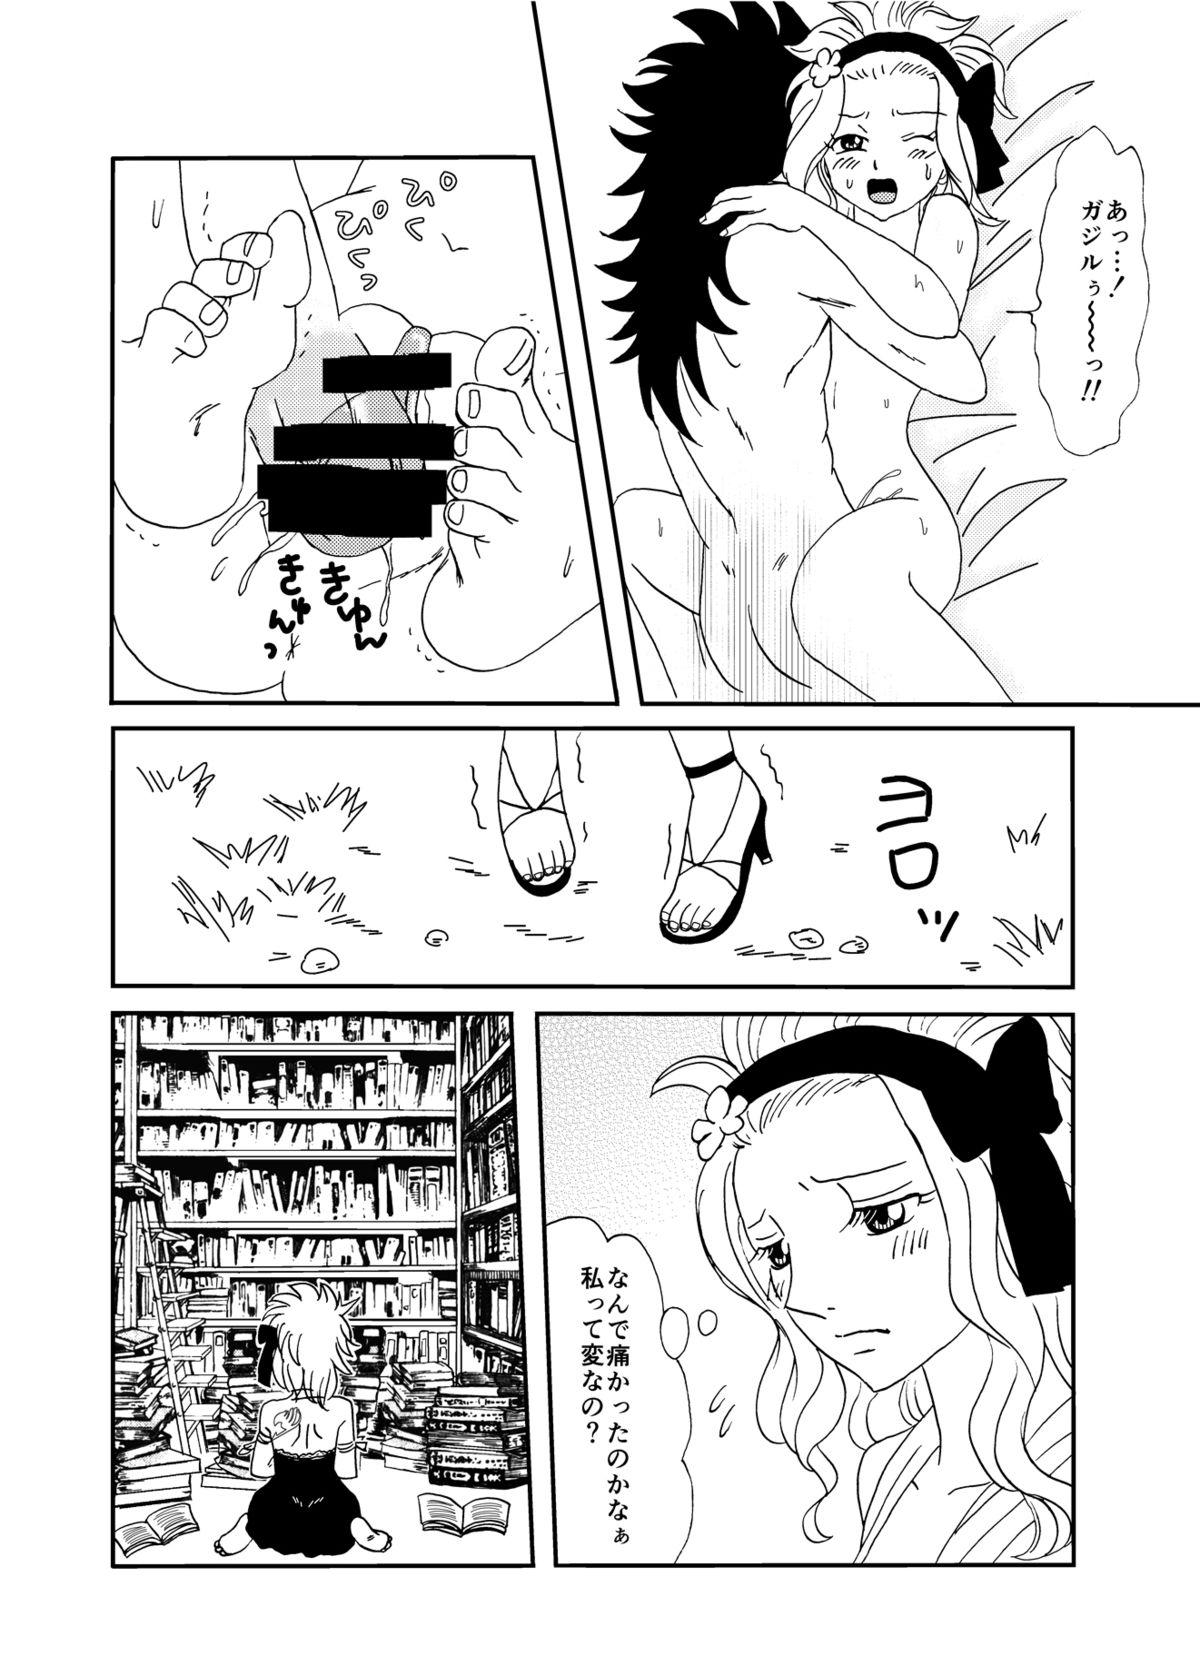 GajeeLevy Manga 2 13